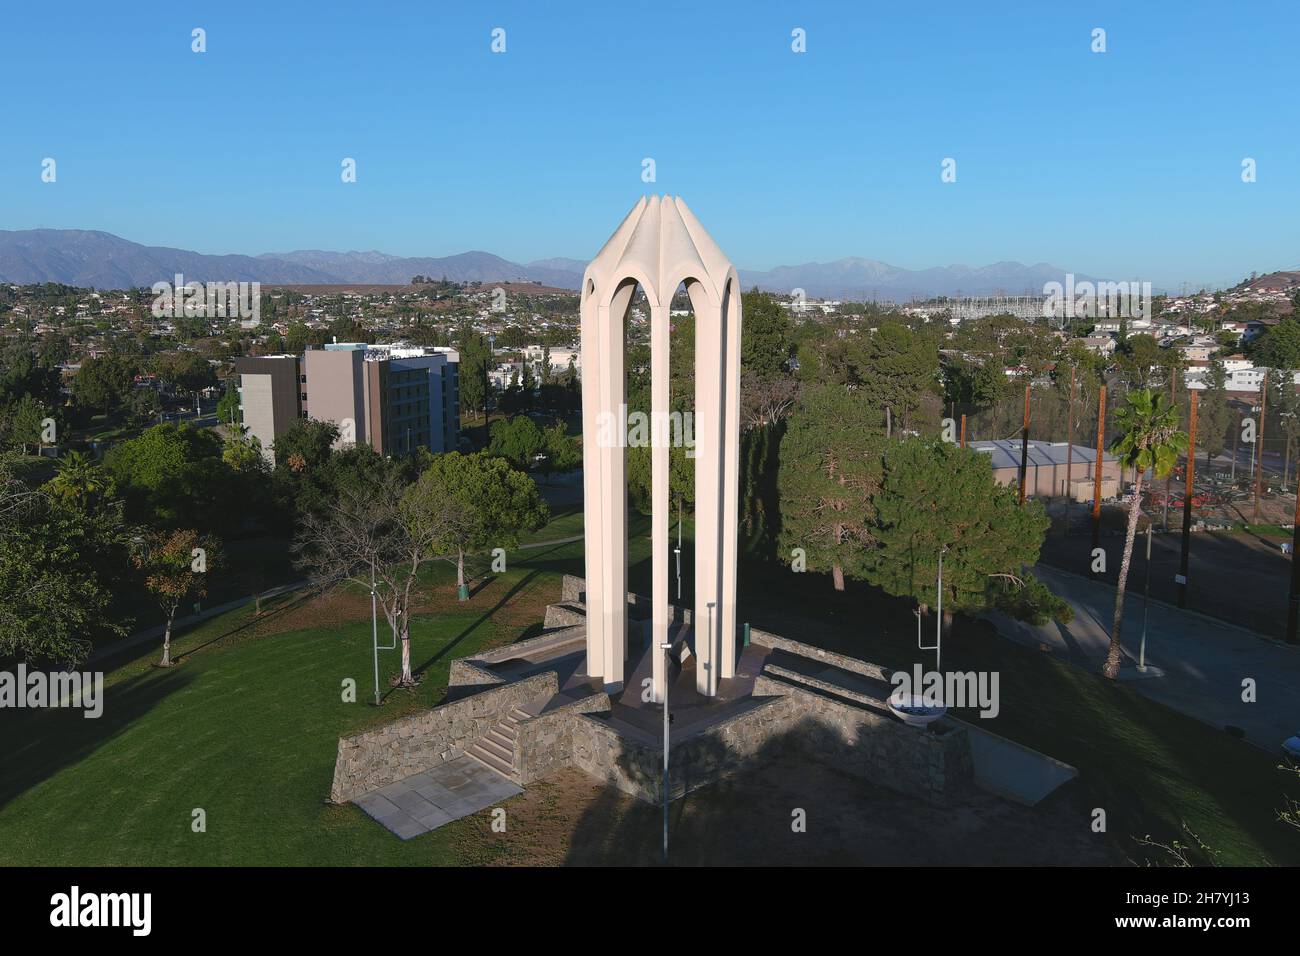 Vista aerea del Monumento dei Martiri del genocidio armeno al Parco Bicknell, giovedì 25 novembre 2021, a Montebello, Calif. La struttura, svelata in Un Foto Stock